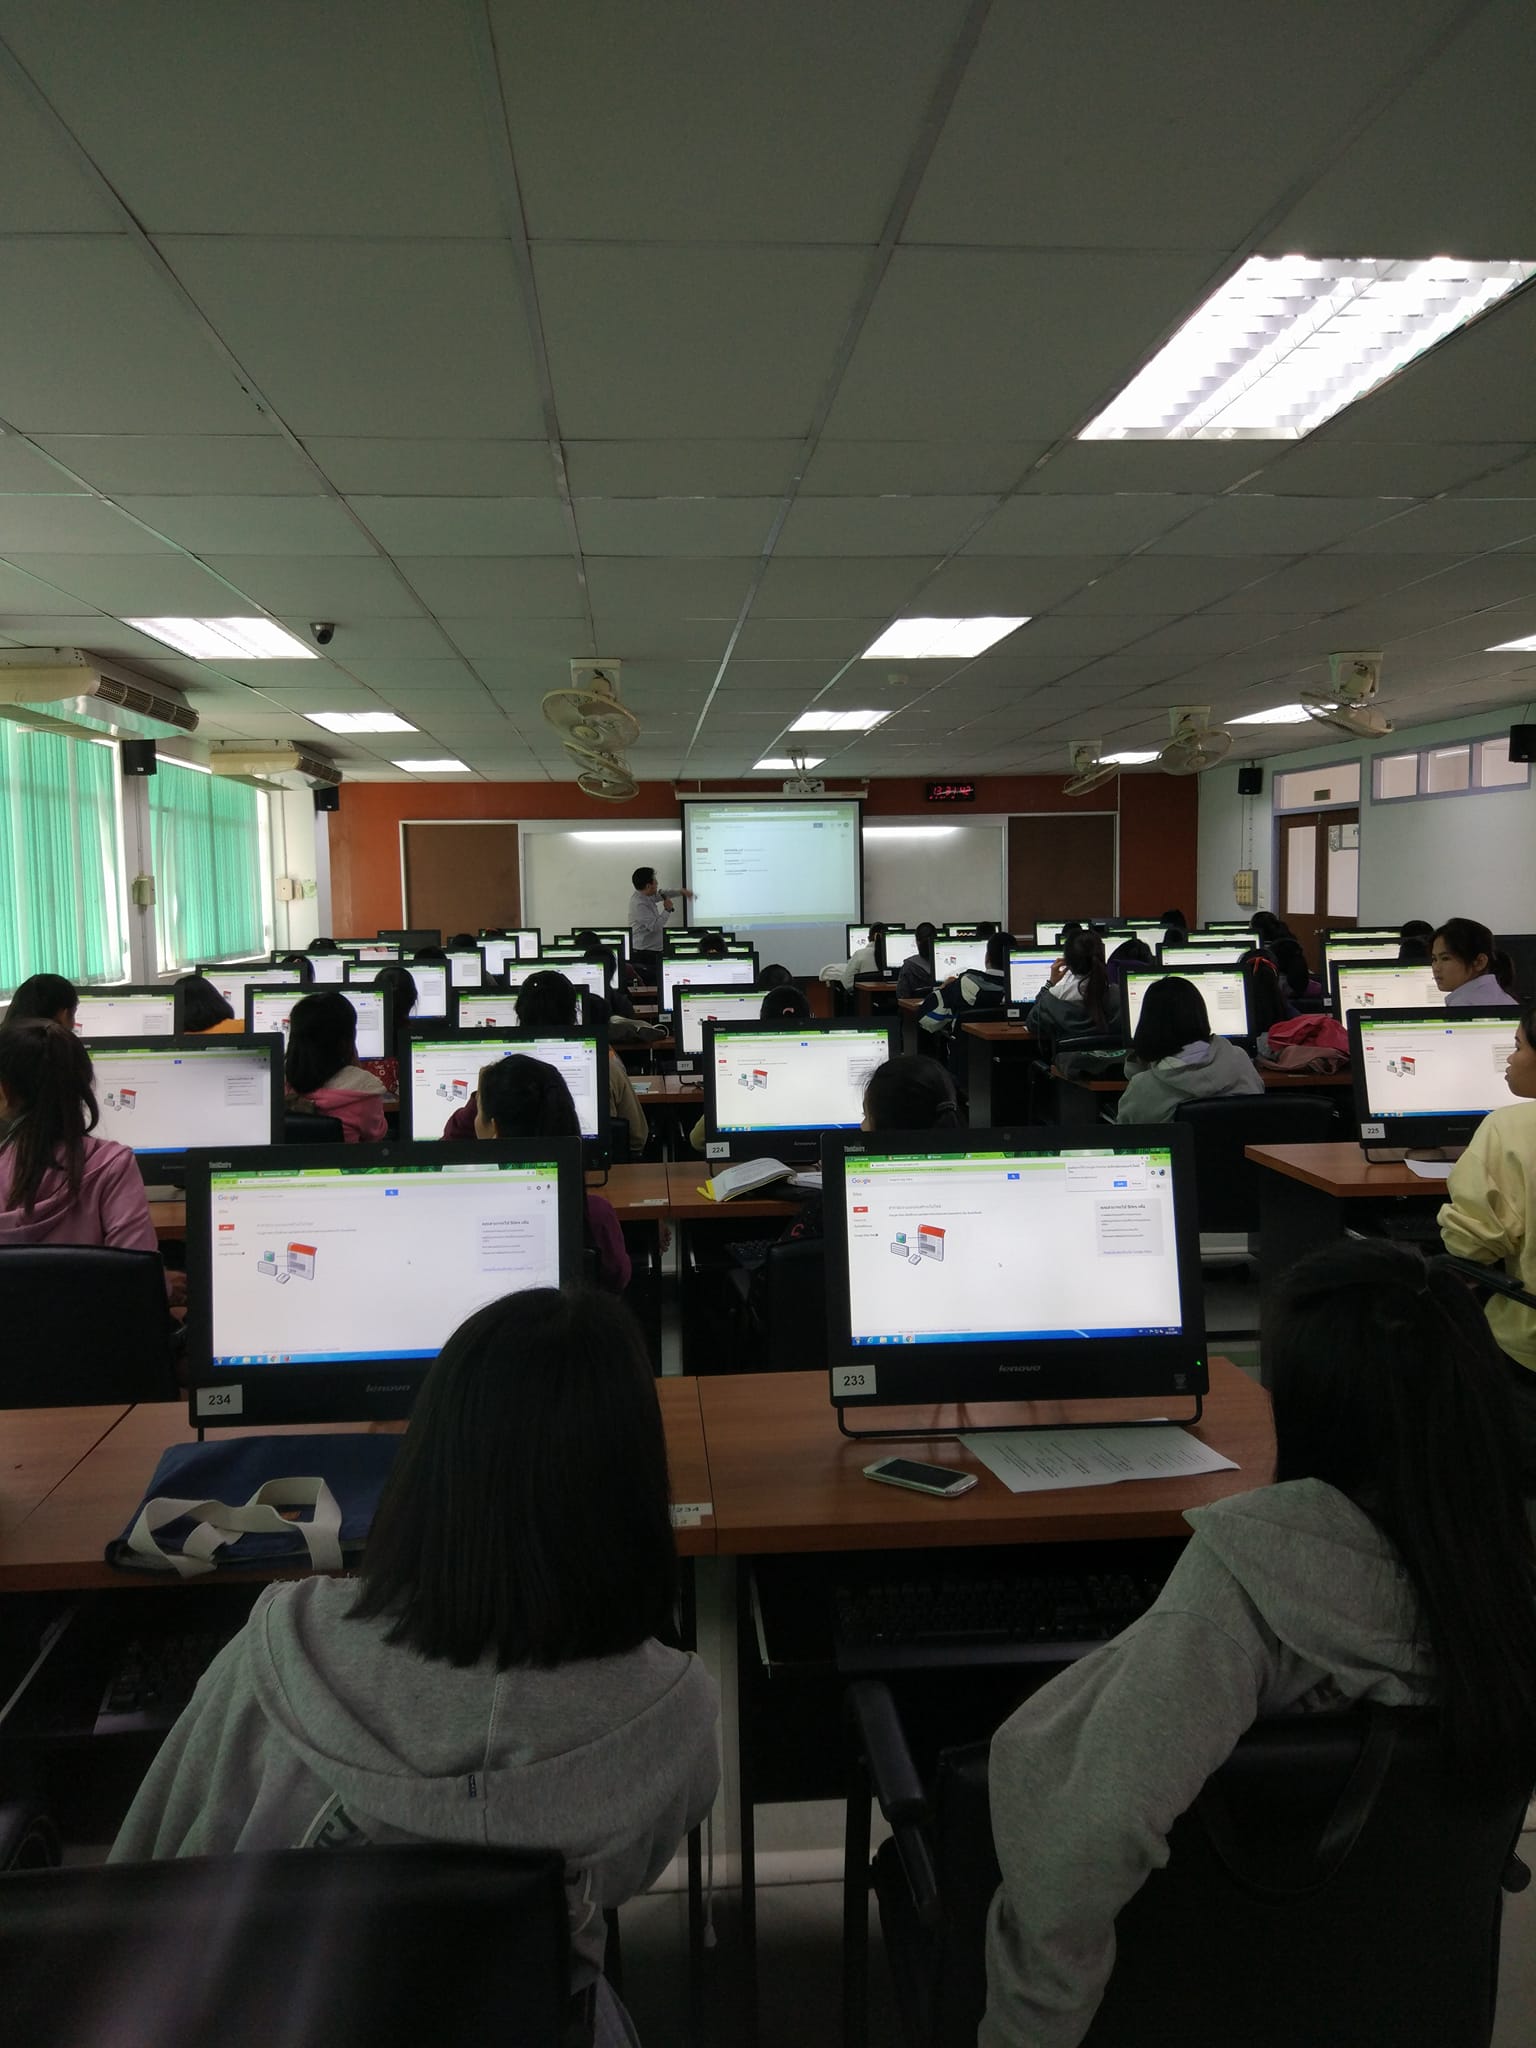 ภาพที่ 1. วันที่ 6 ธันวาคม 2560 โครงการเสริมสร้างคุณลักษณะบัณฑิตของนักศึกษาโปรแกรมวิชาภาษาจีน กิจกรรมอบรมเชิงปฏิบัติการเพื่อพัฒนาสื่อนวัตกรรมการเรียนรู้สำหรับครูภาษาจีน ณ ห้องปฏิบัติการคอมพิวเตอร์ 1 ชั้น 4 ตึกครุศาสตร์